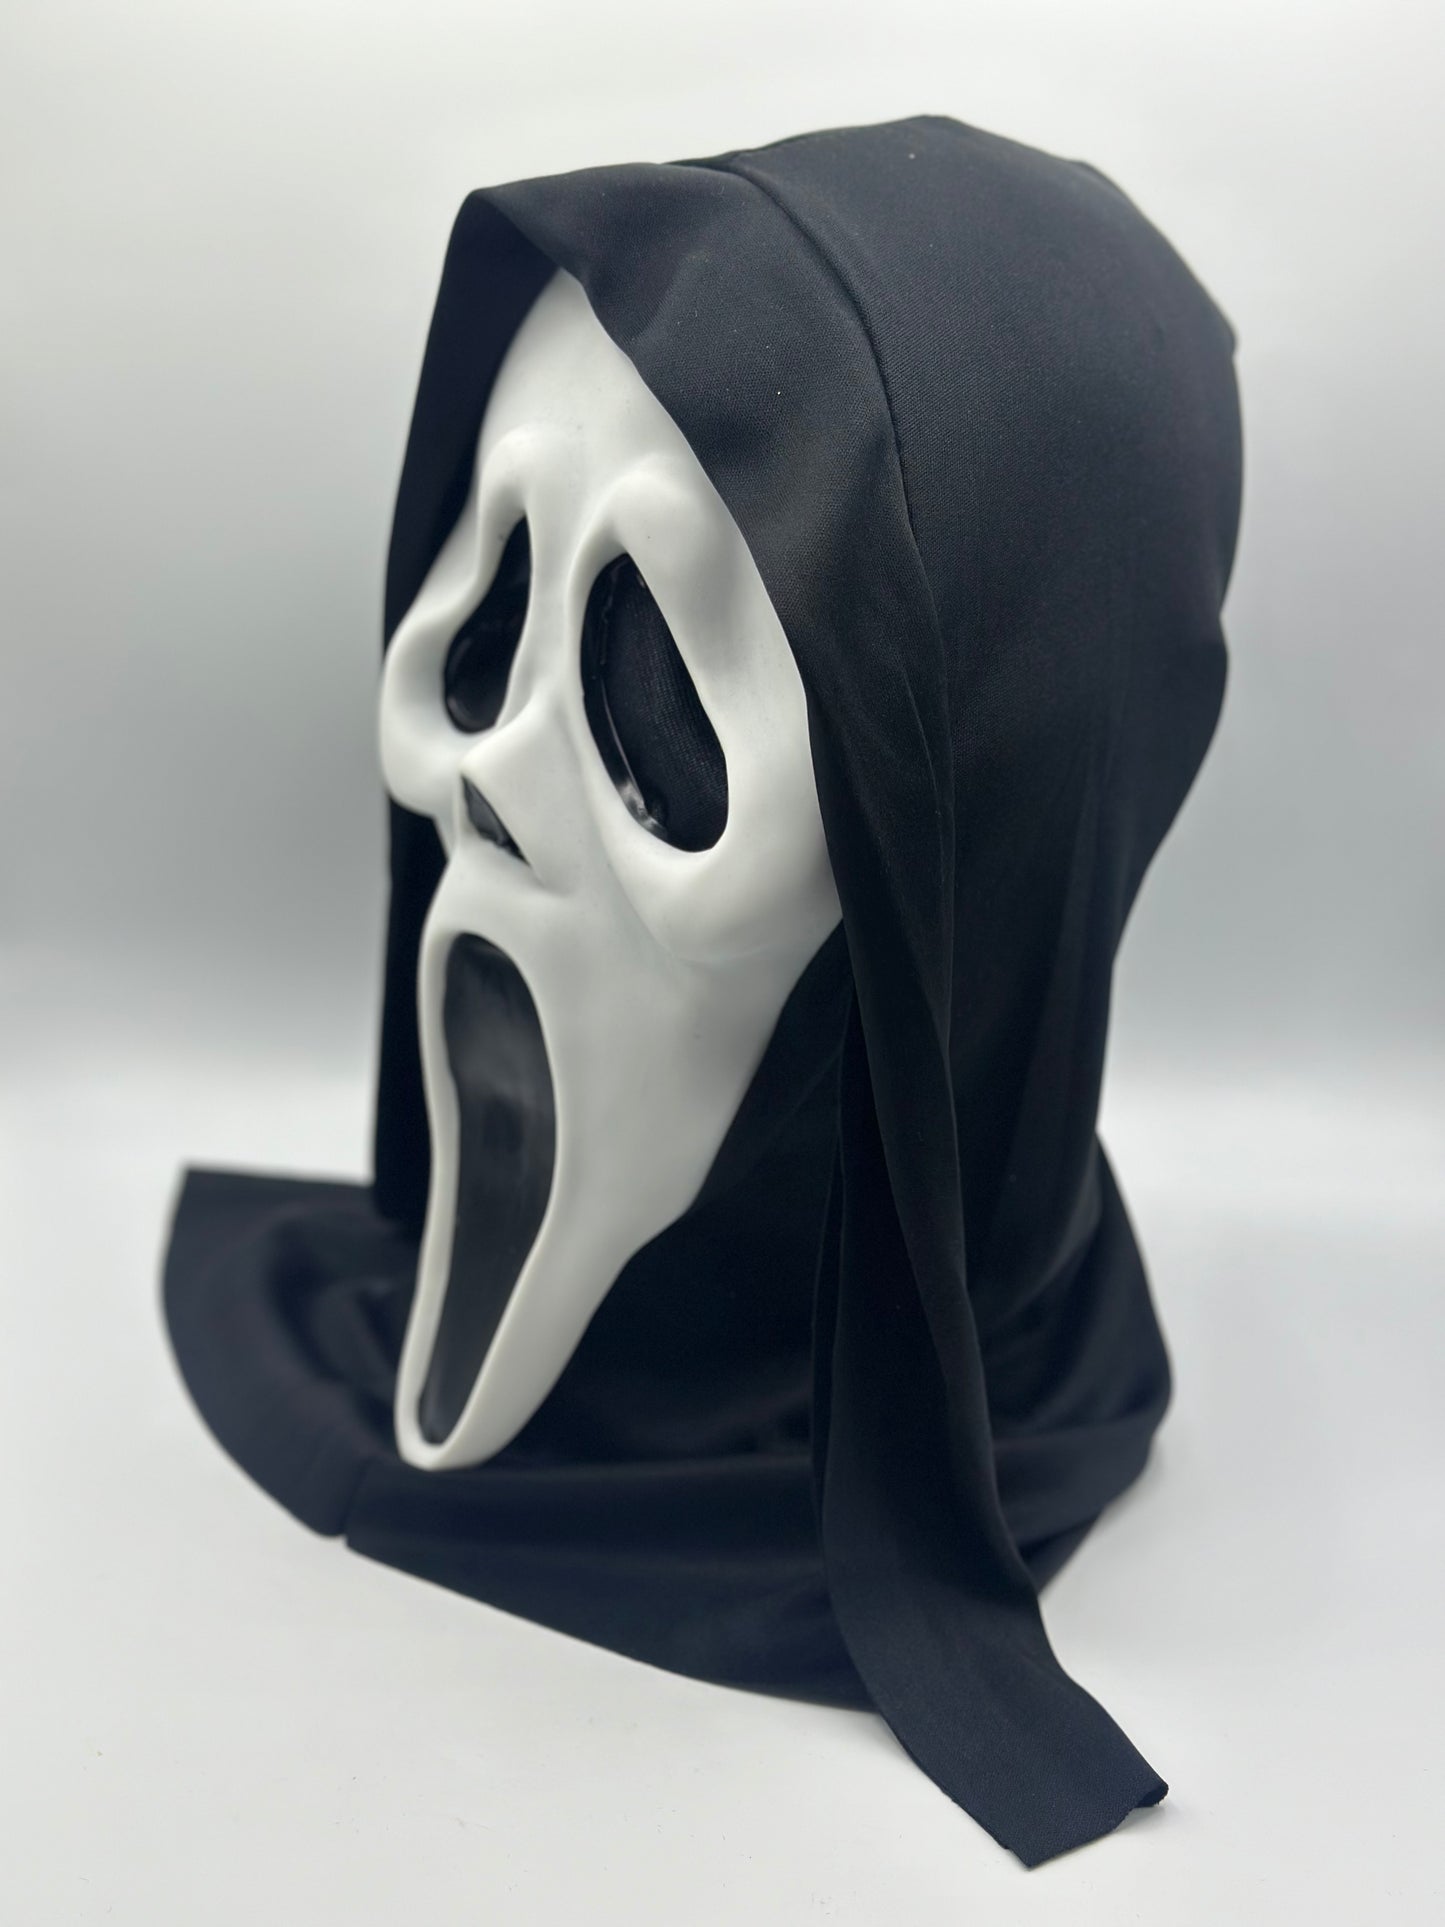 Masque Scream pour Adulte et Enfant, Masque Ghostface, Masque Halloween Horreur 